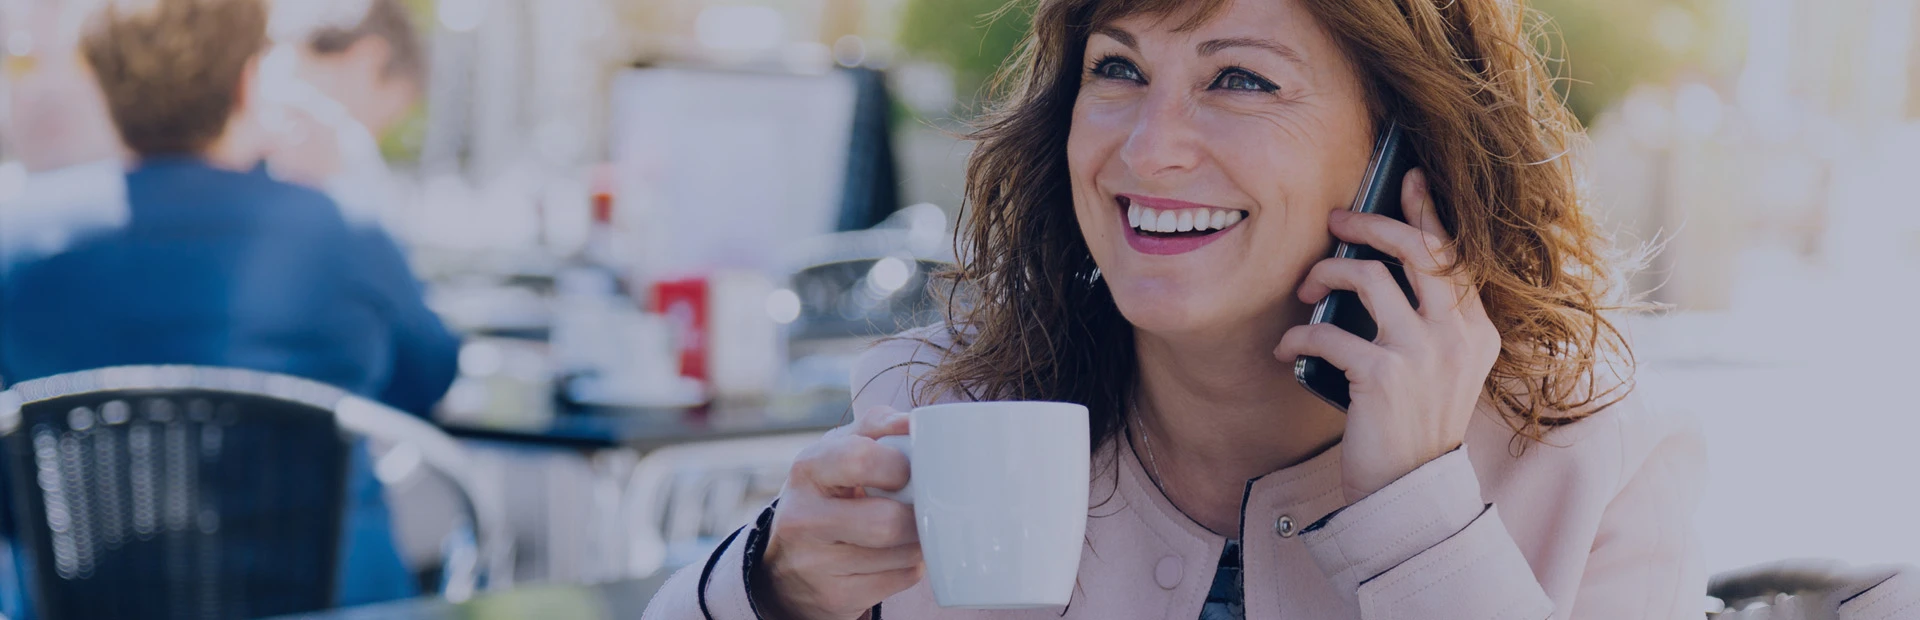 Mujer de mediana edad sonríe mientras habla por teléfono y sujeta una taza de café